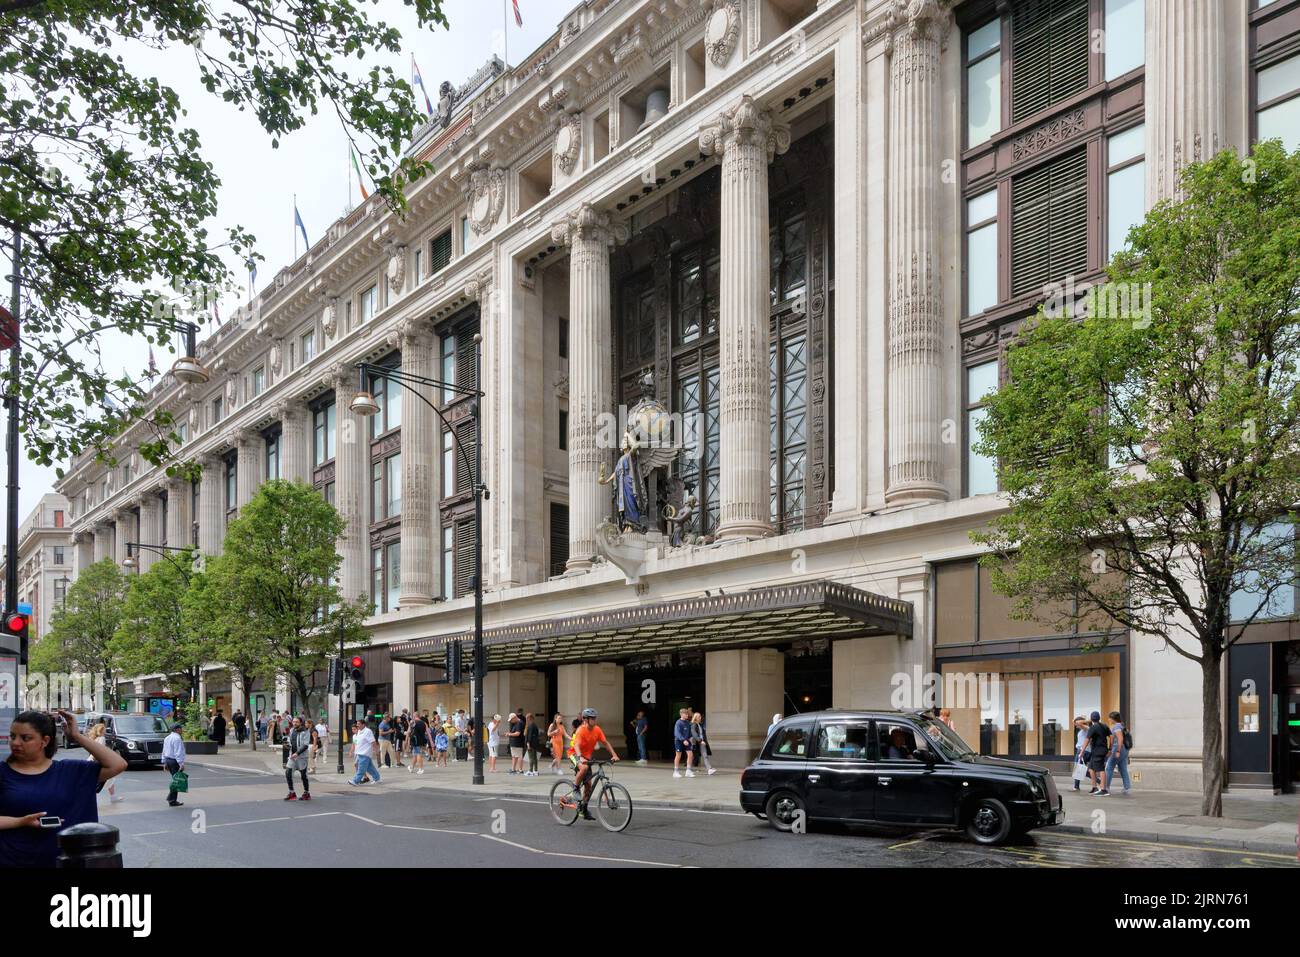 Louis Vuitton Selfridges London, 400 Oxford Street